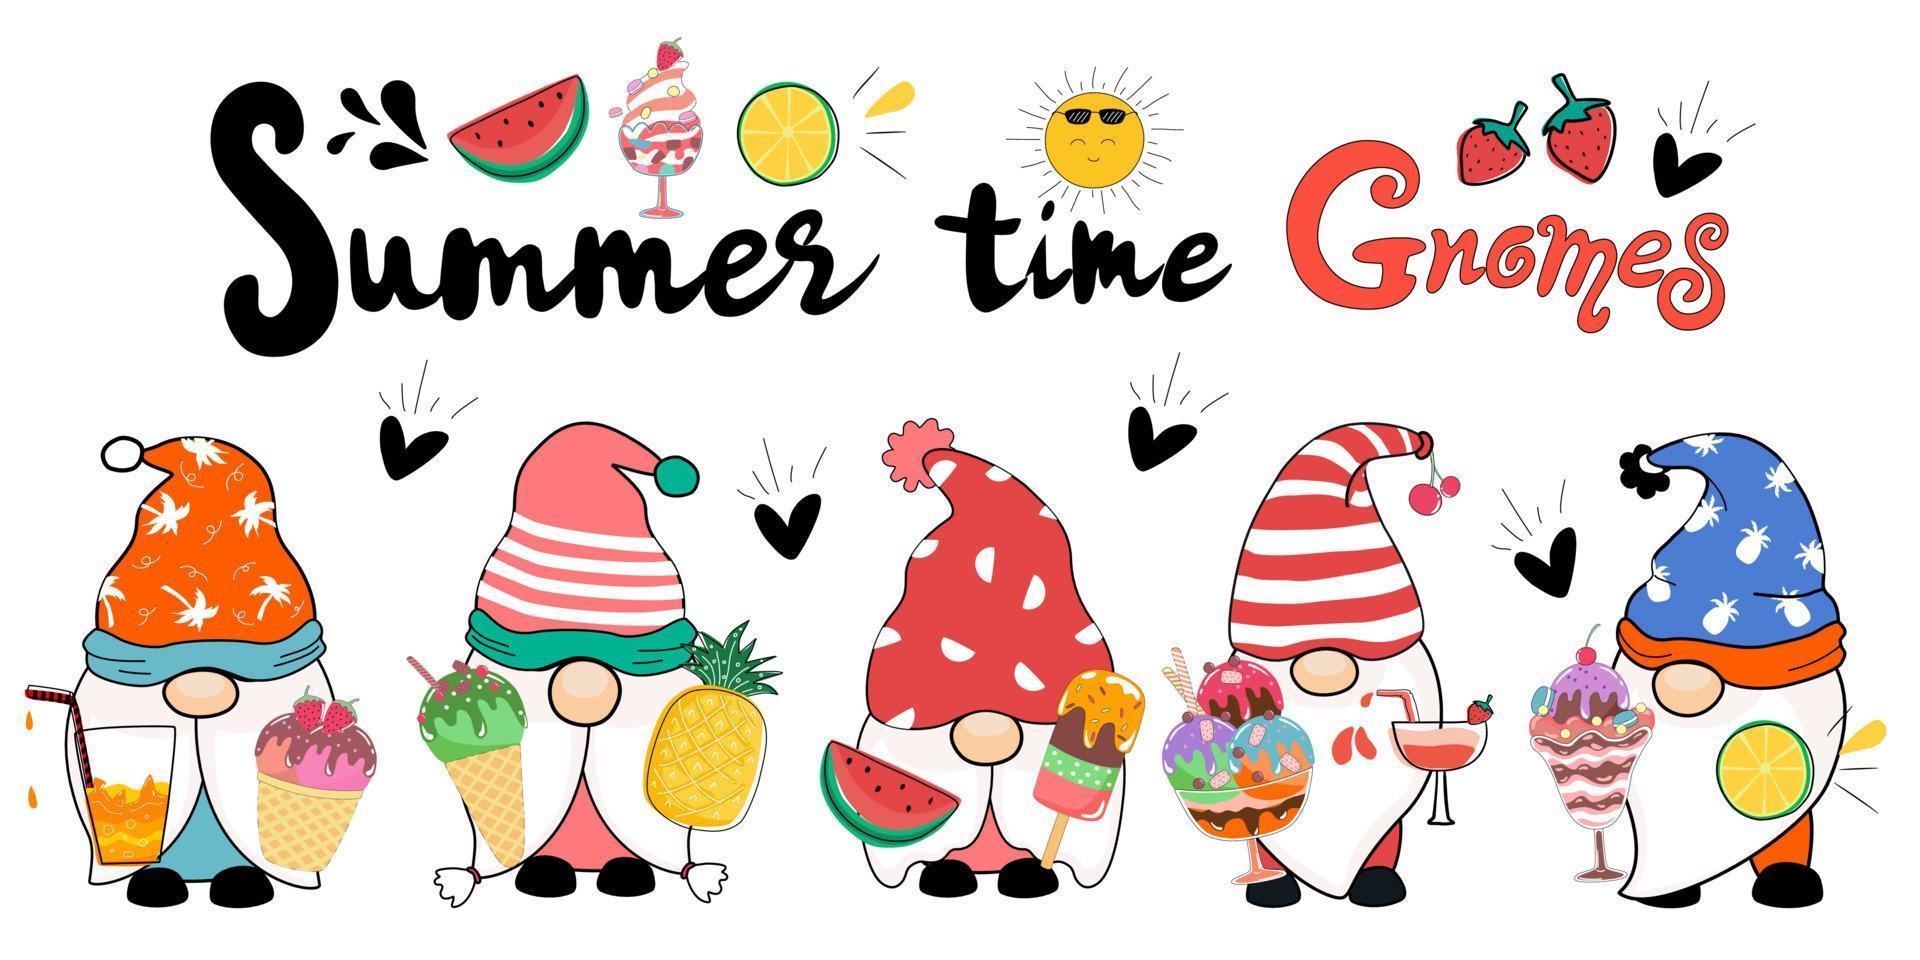 gnome et illustration vectorielle de crème glacée sucrée conçue dans un style doodle. dans le thème de l'été pour la décoration, les autocollants, les conceptions de chemises, l'art pour les enfants et autres. vecteur